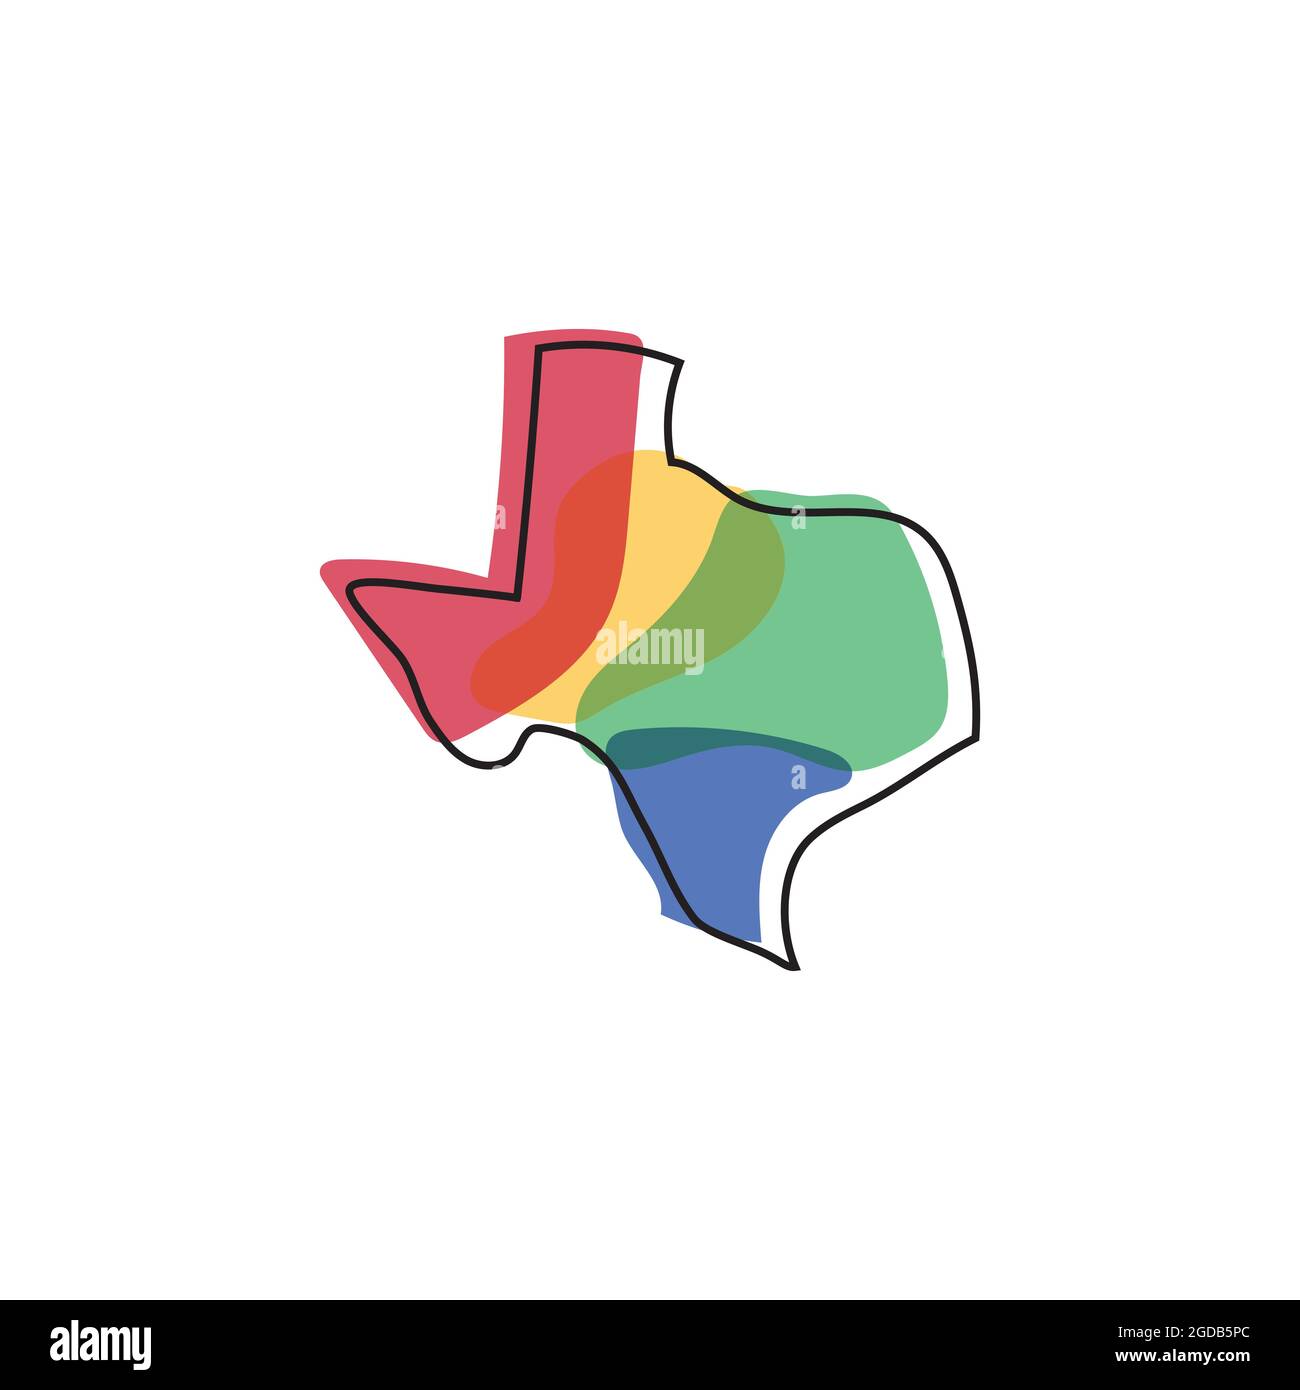 Texas map logo design illustration vector template Stock Vector